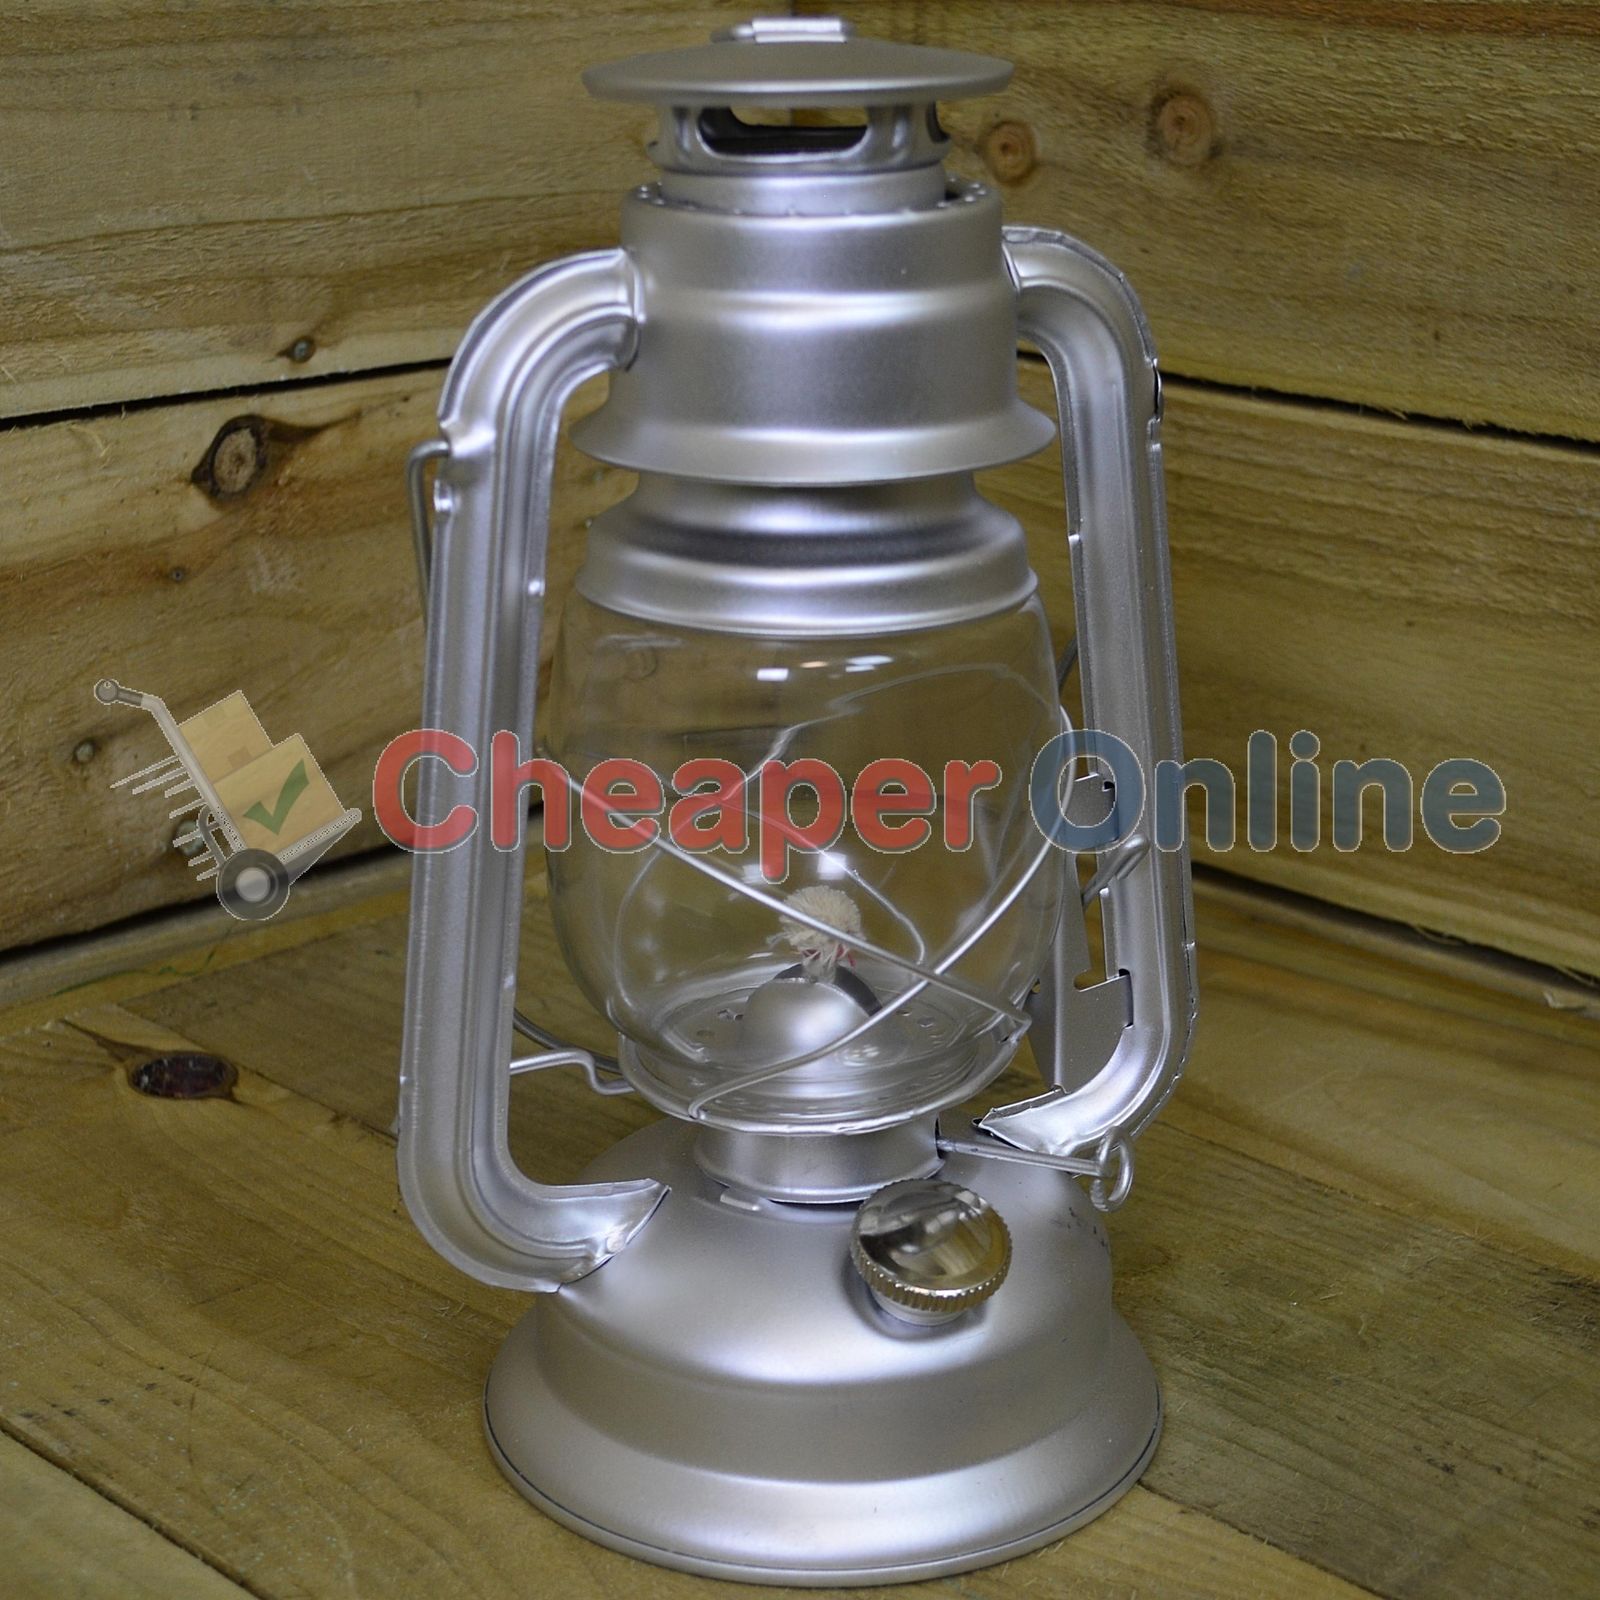 12" Paraffin Hurricane Camping Lantern Light - Silver